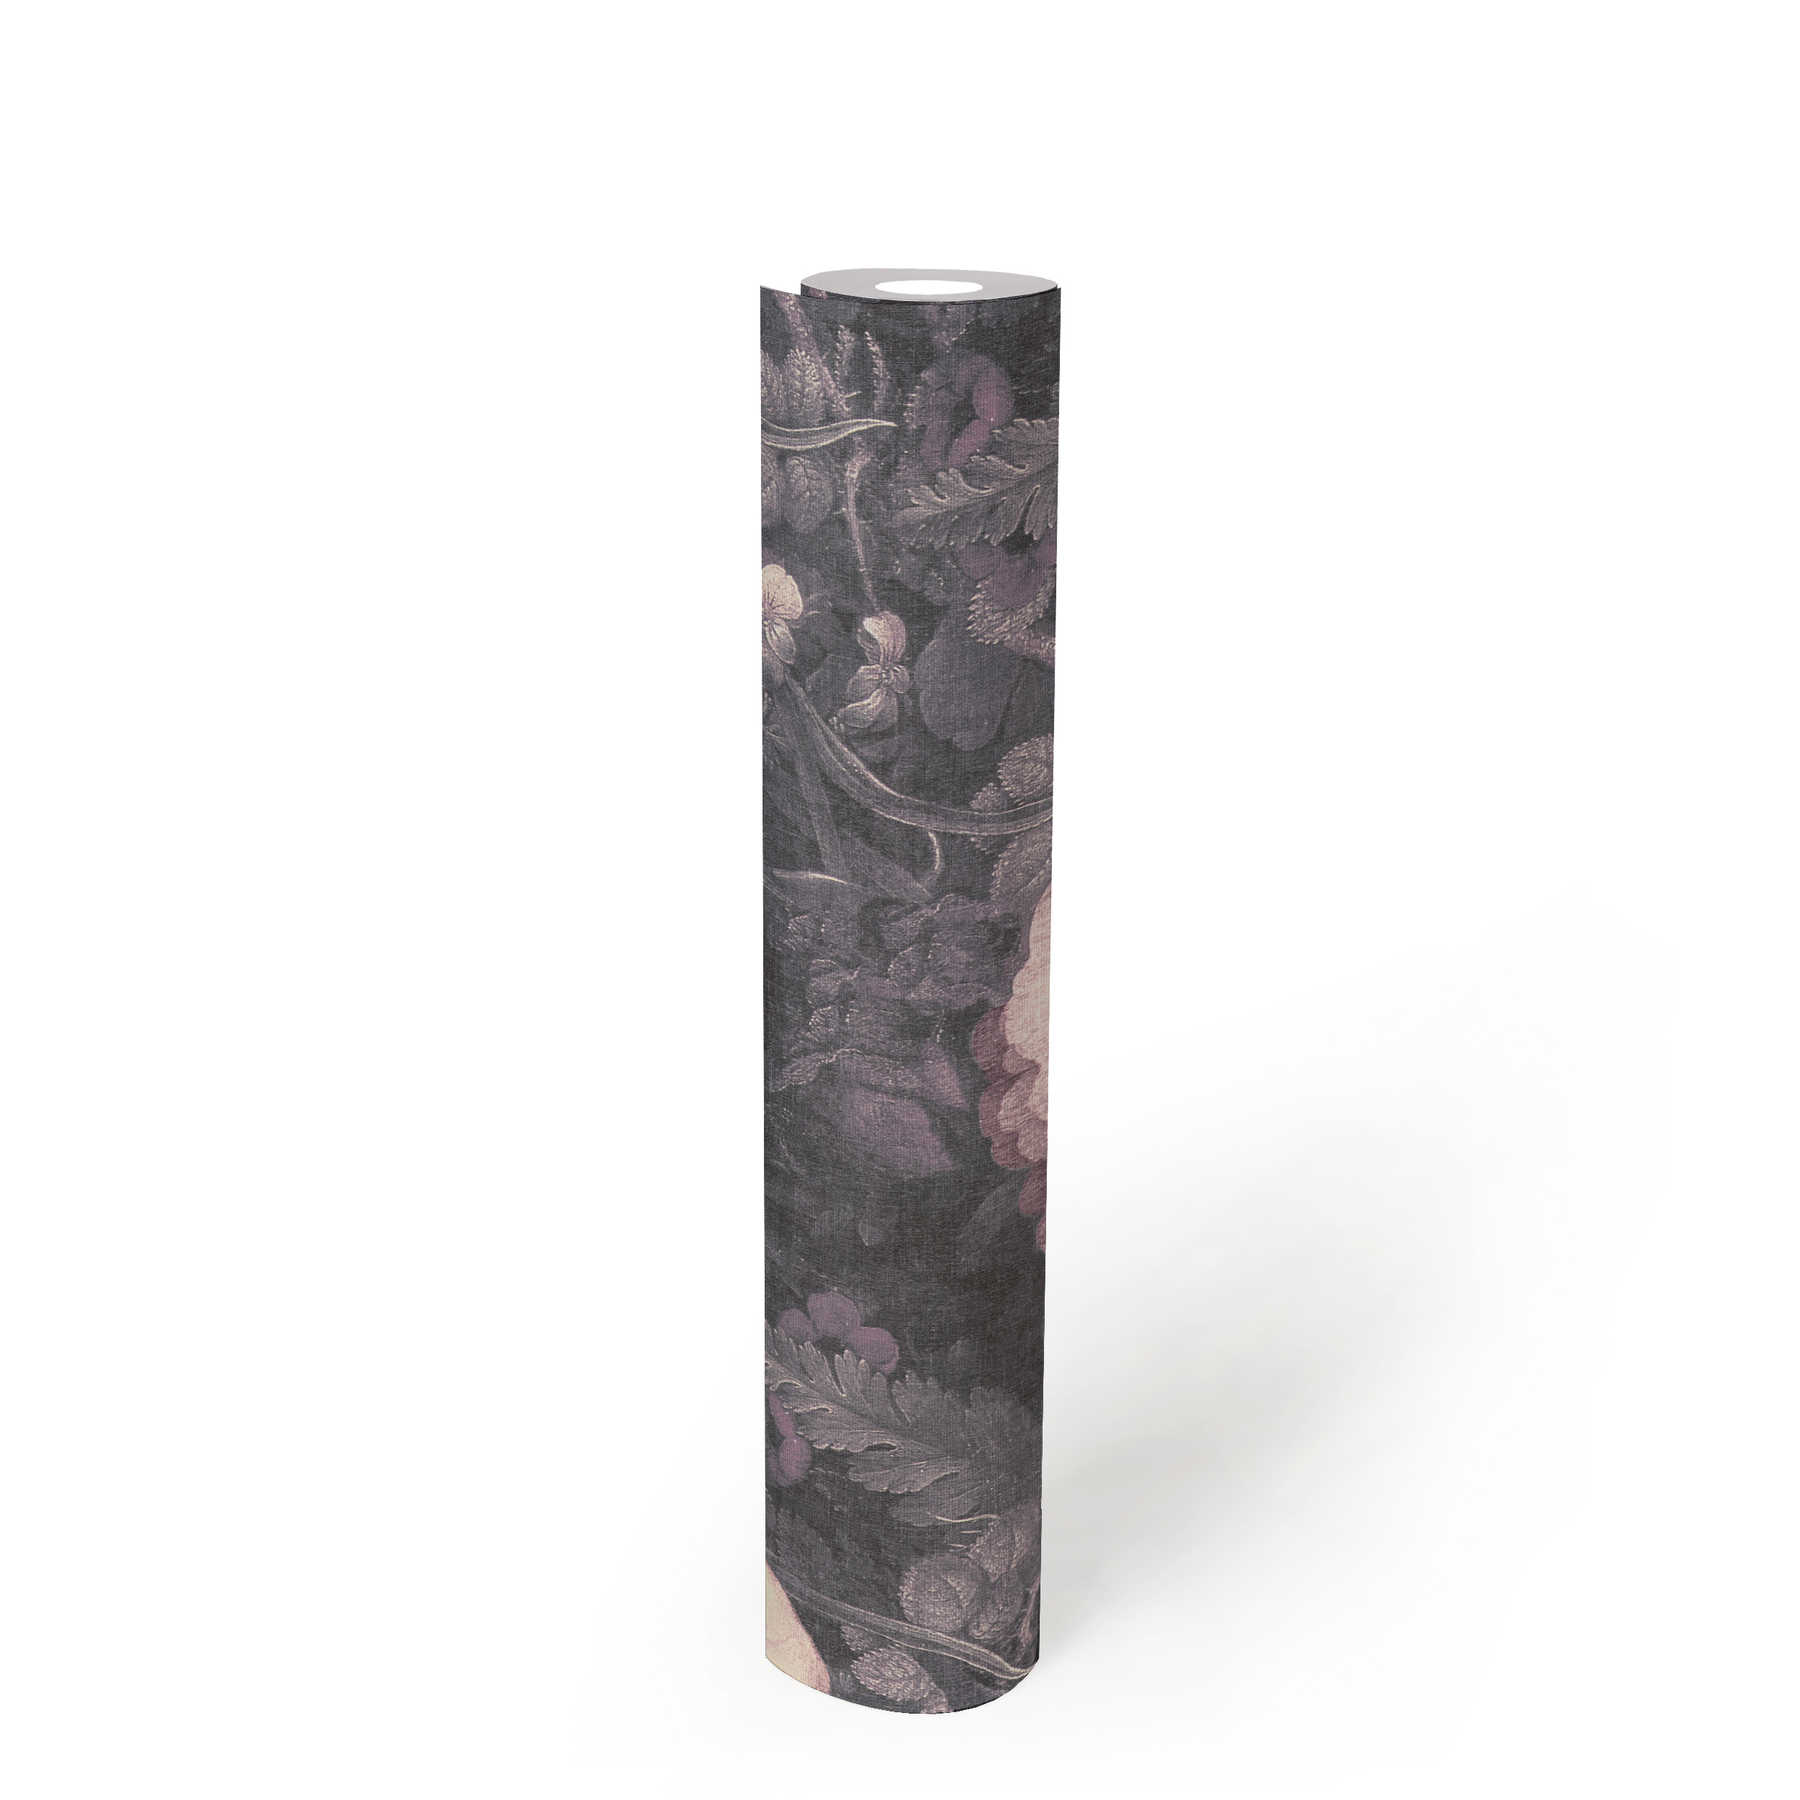             Papier peint fleuri style tableau, aspect canevas - gris, rose, noir
        